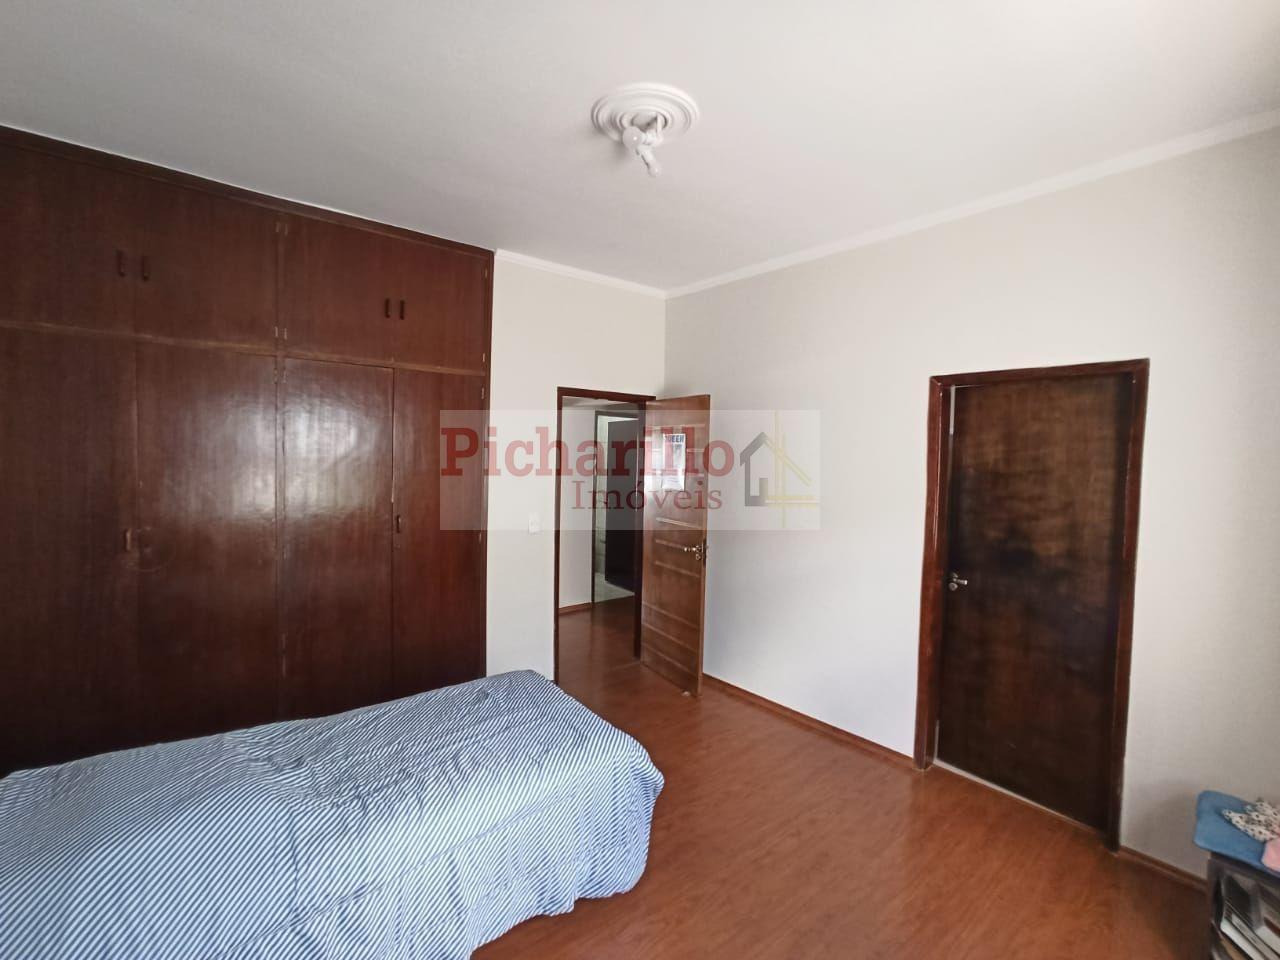 Casa com 3 dormitórios à venda, 351 m² por R$ 750.000 - Jardim Cardinalli - São Carlos/SP